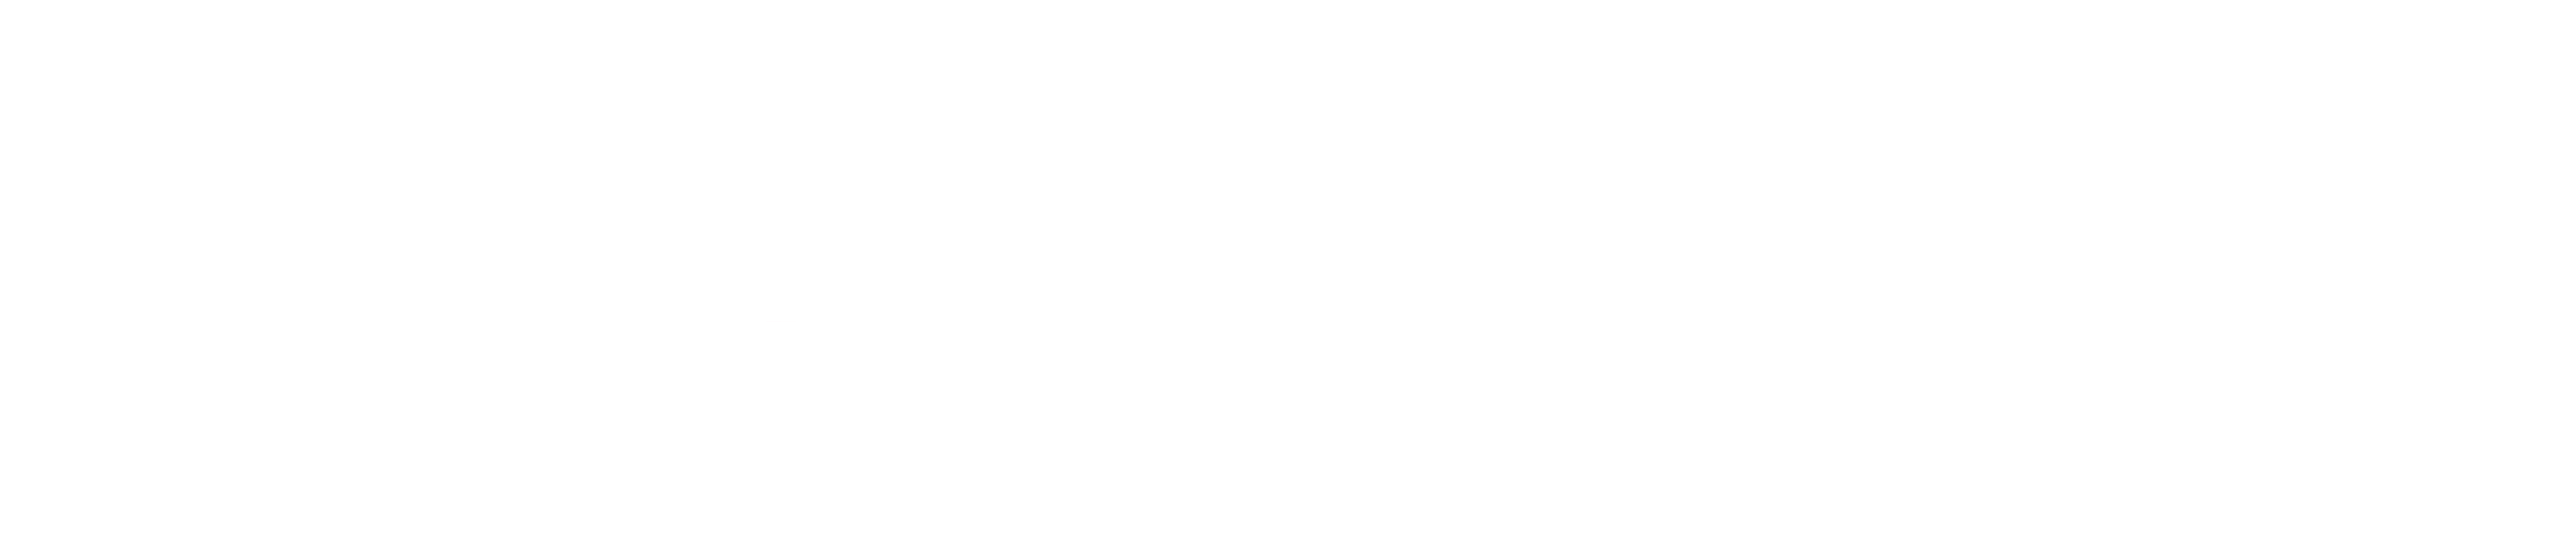 Endesa logo large for dark backgrounds (transparent PNG)